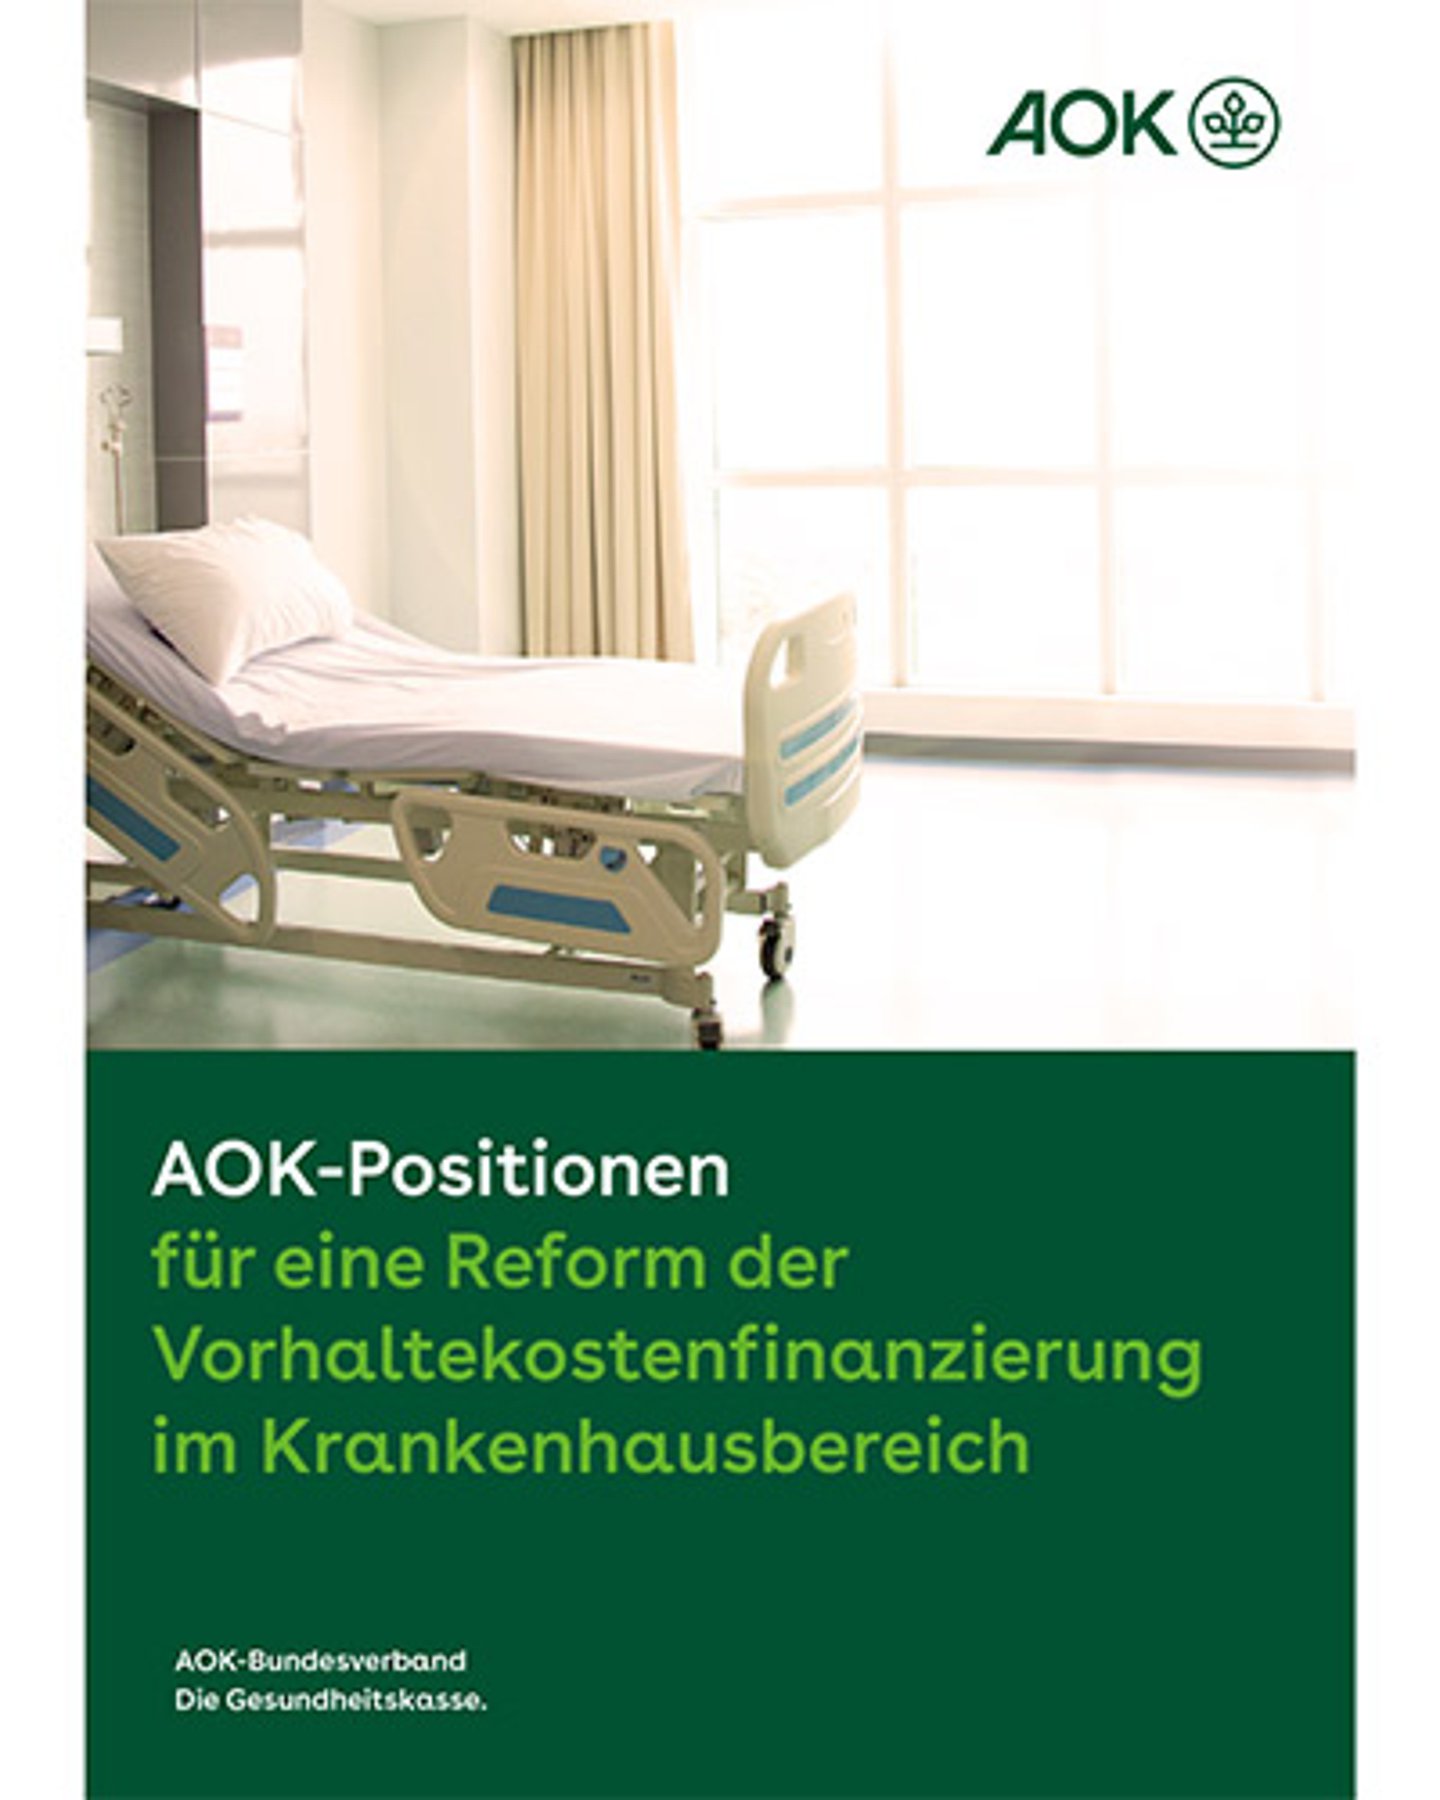 Titelbild: AOK-Positionspapier ür eine Reform der Vorhaltekostenfinanzierung im Krankenhausbereich - August 2022